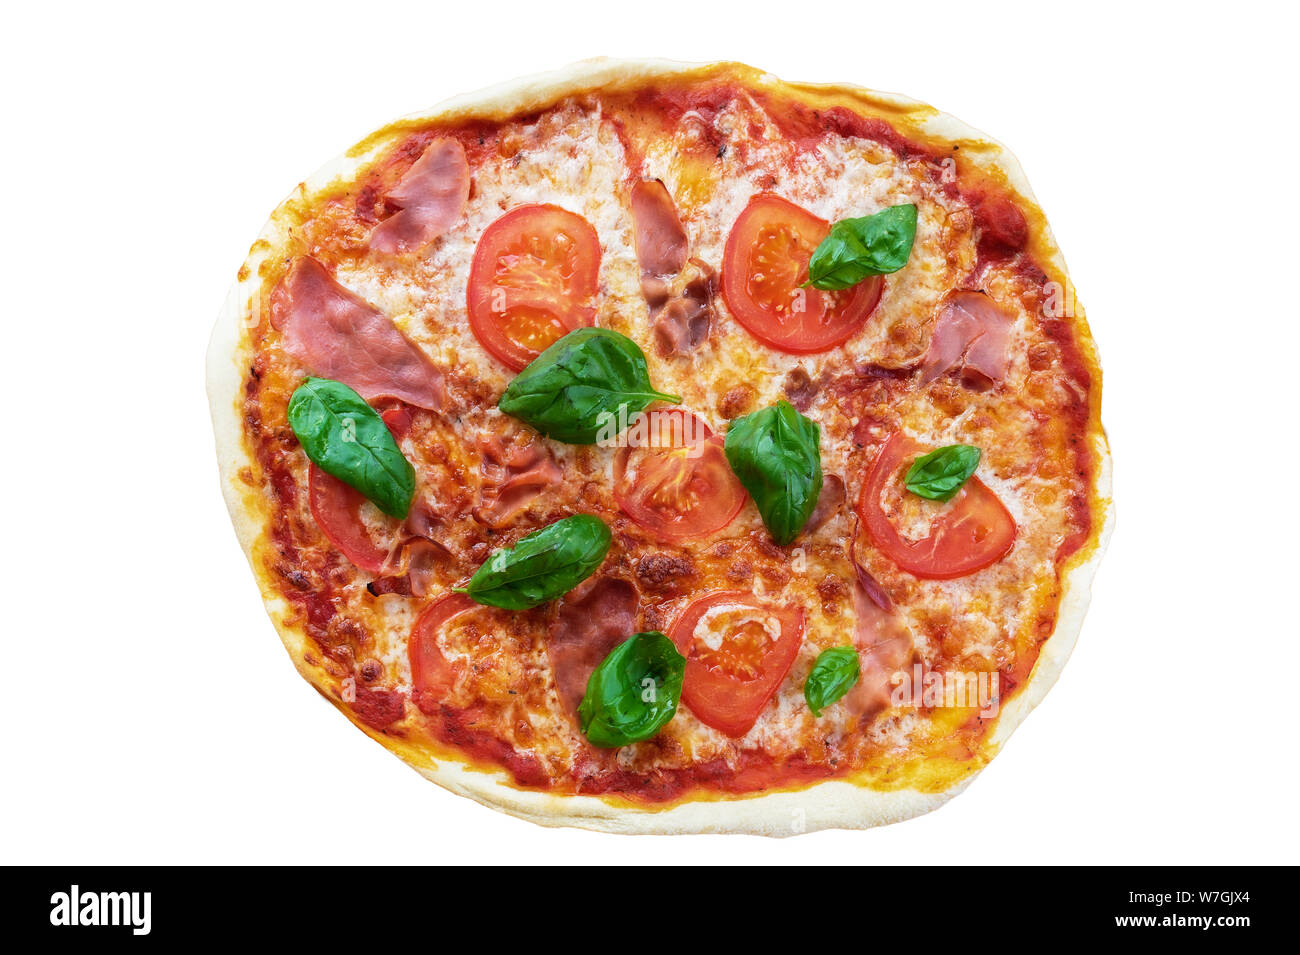 Vue de dessus des pizzas fraîches avec du jambon serrano, des tranches de tomate et basilic isolé sur fond blanc Banque D'Images